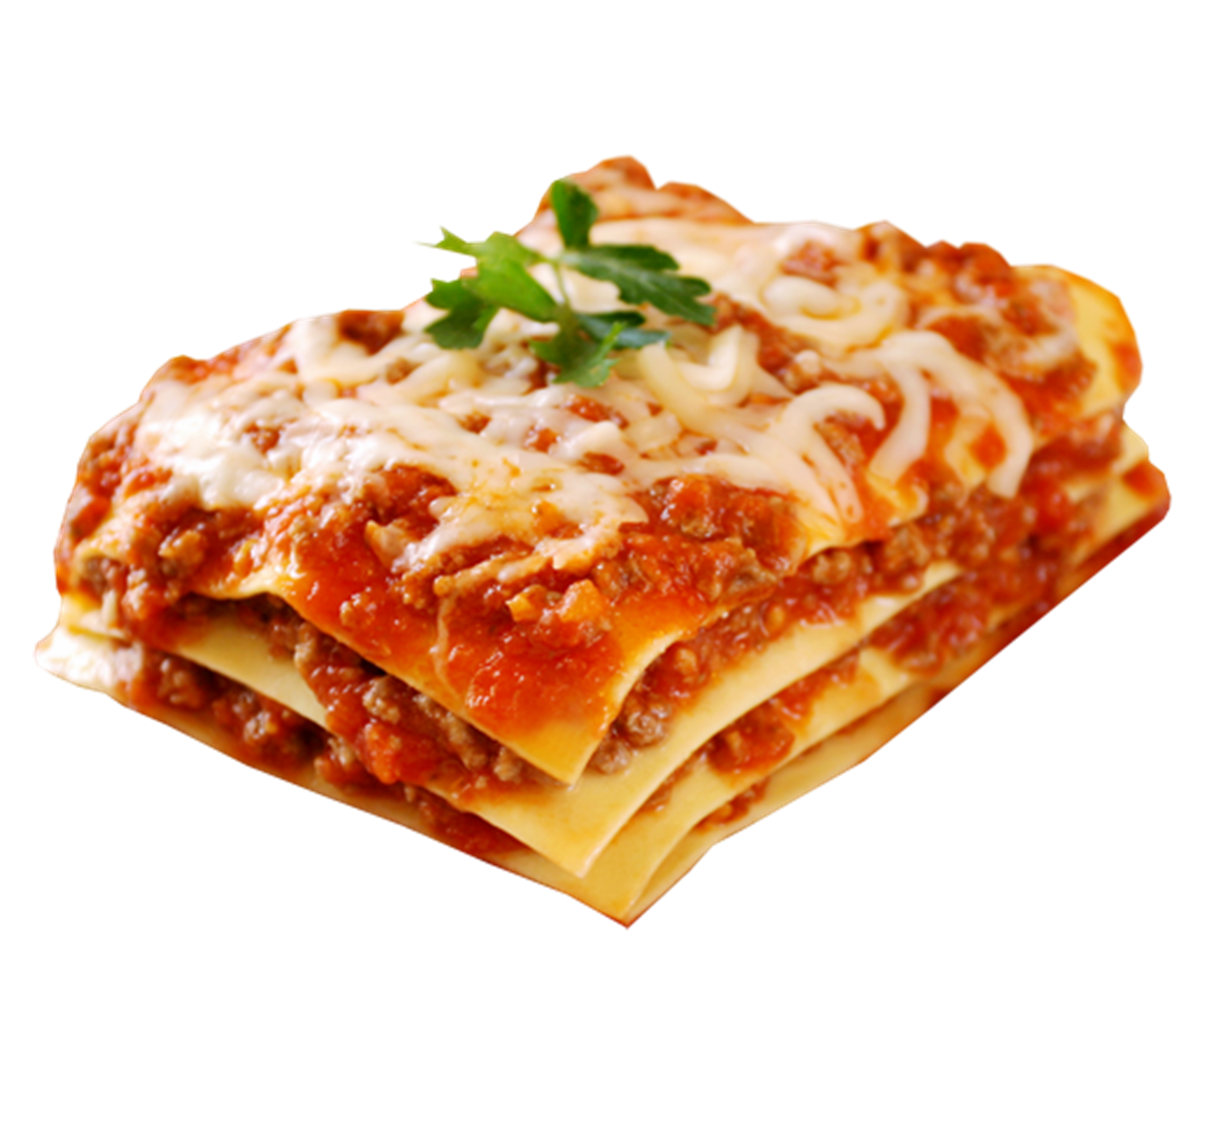 pasta clipart lasagna